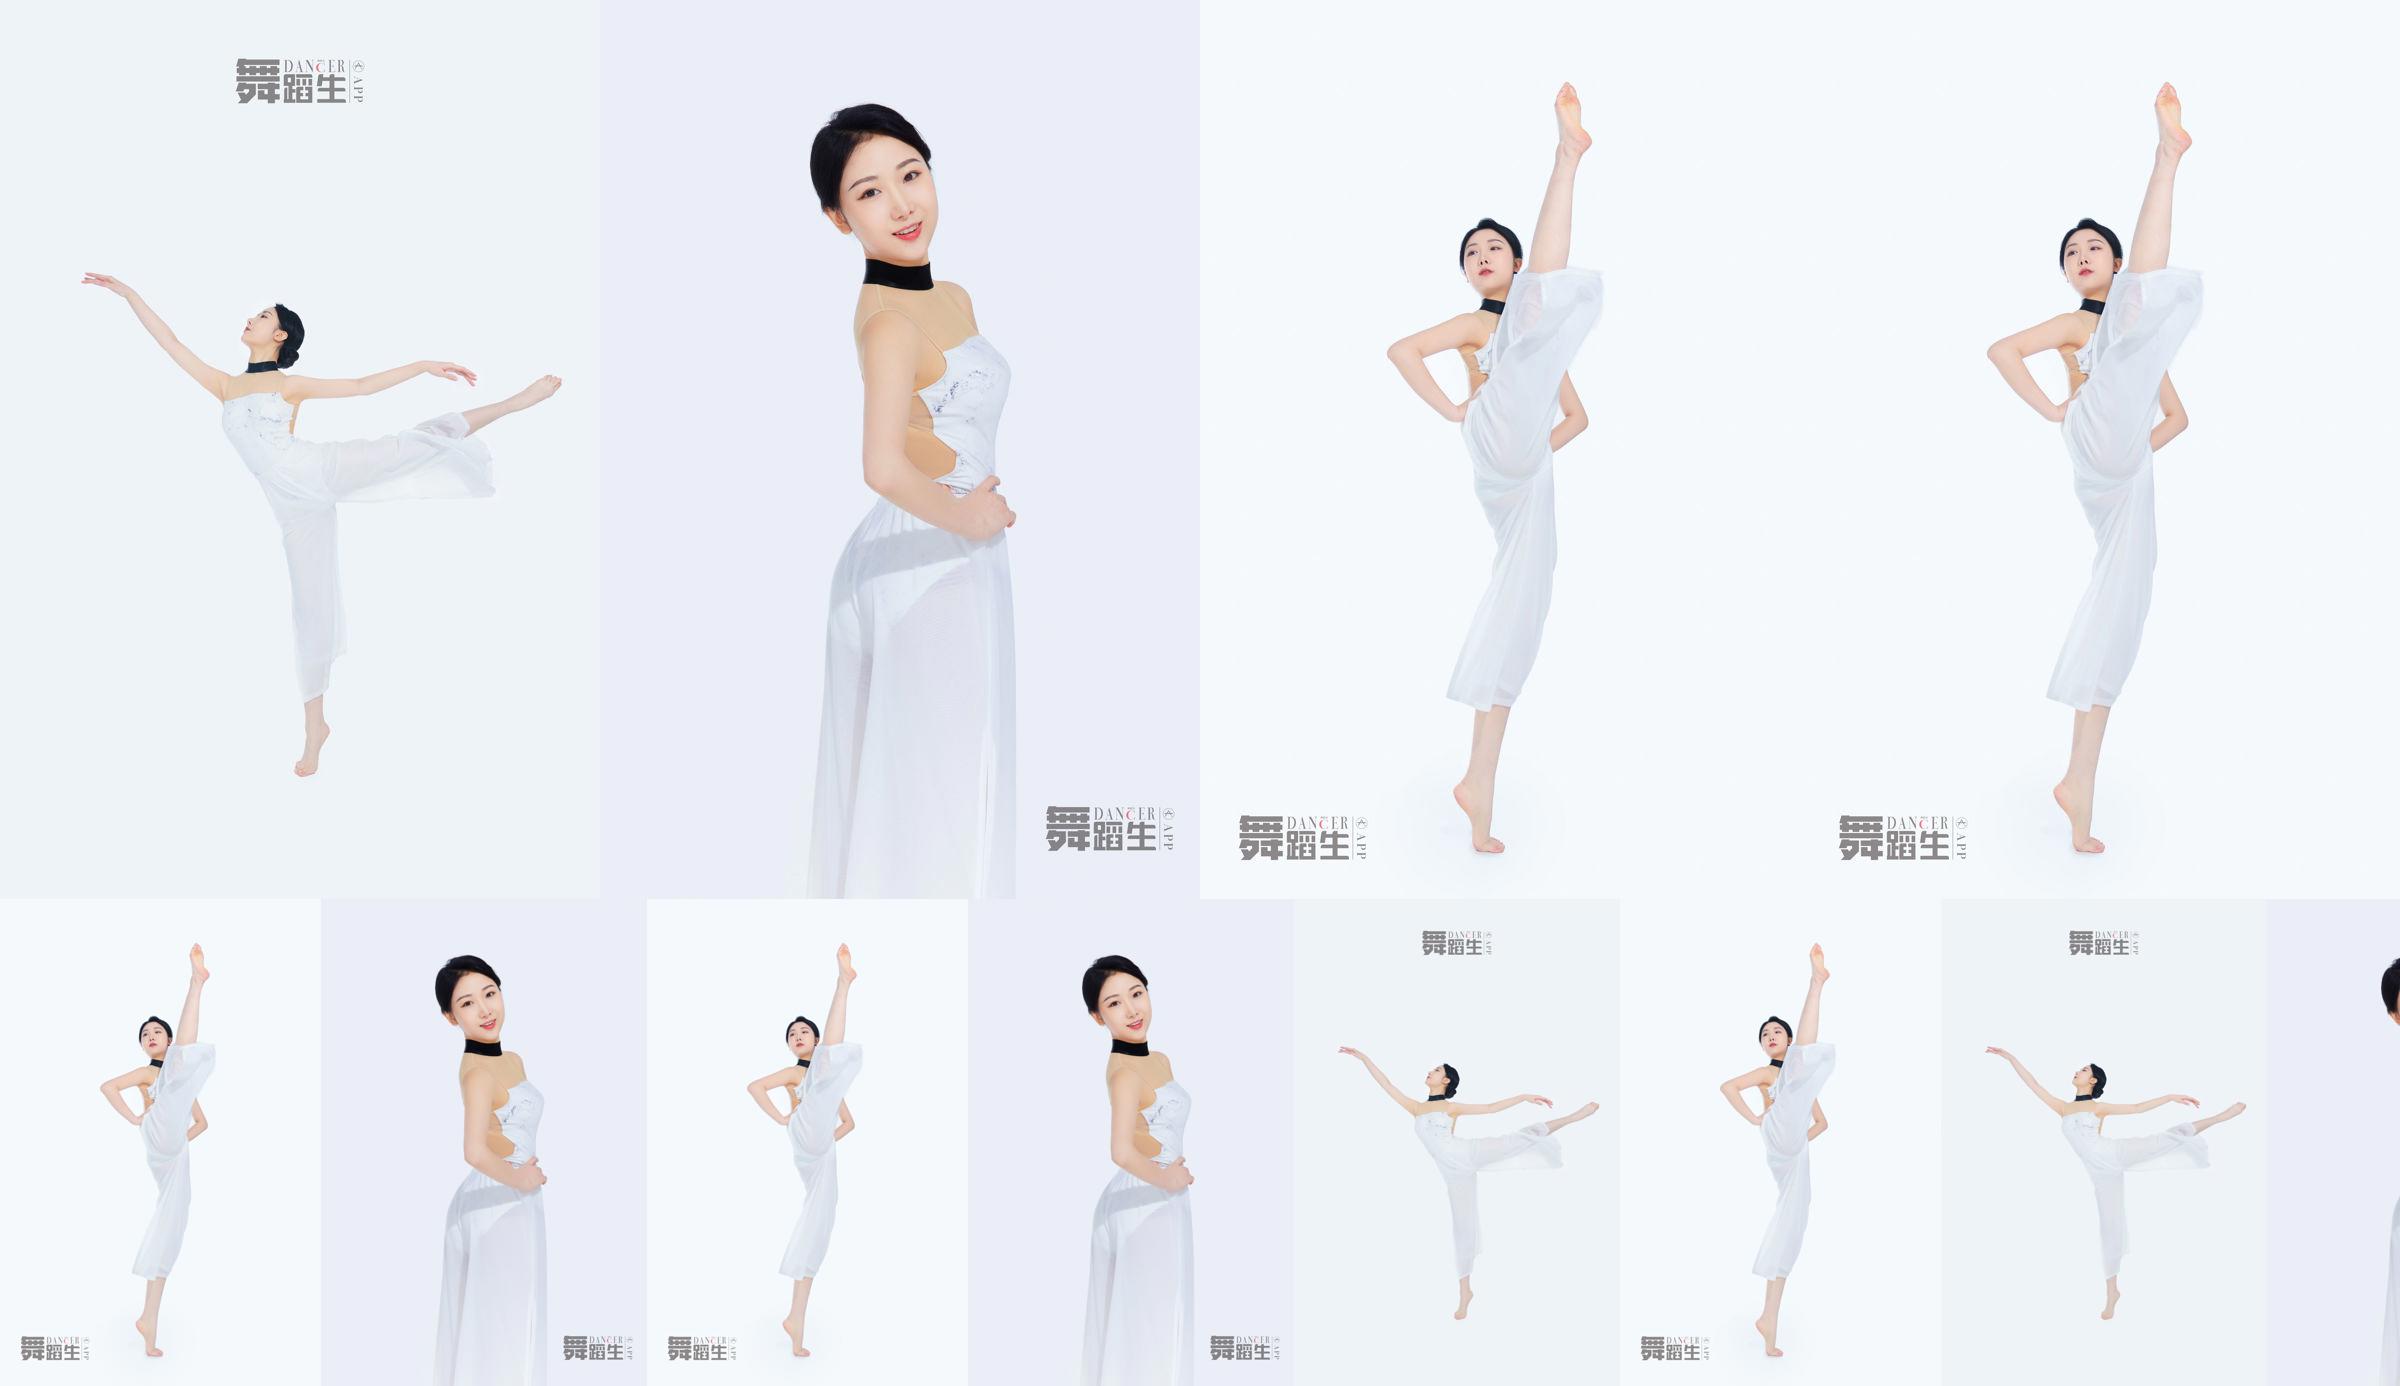 [Carrie Galli] Journal d'un étudiant en danse 081 Xue Hui No.c6deec Page 3